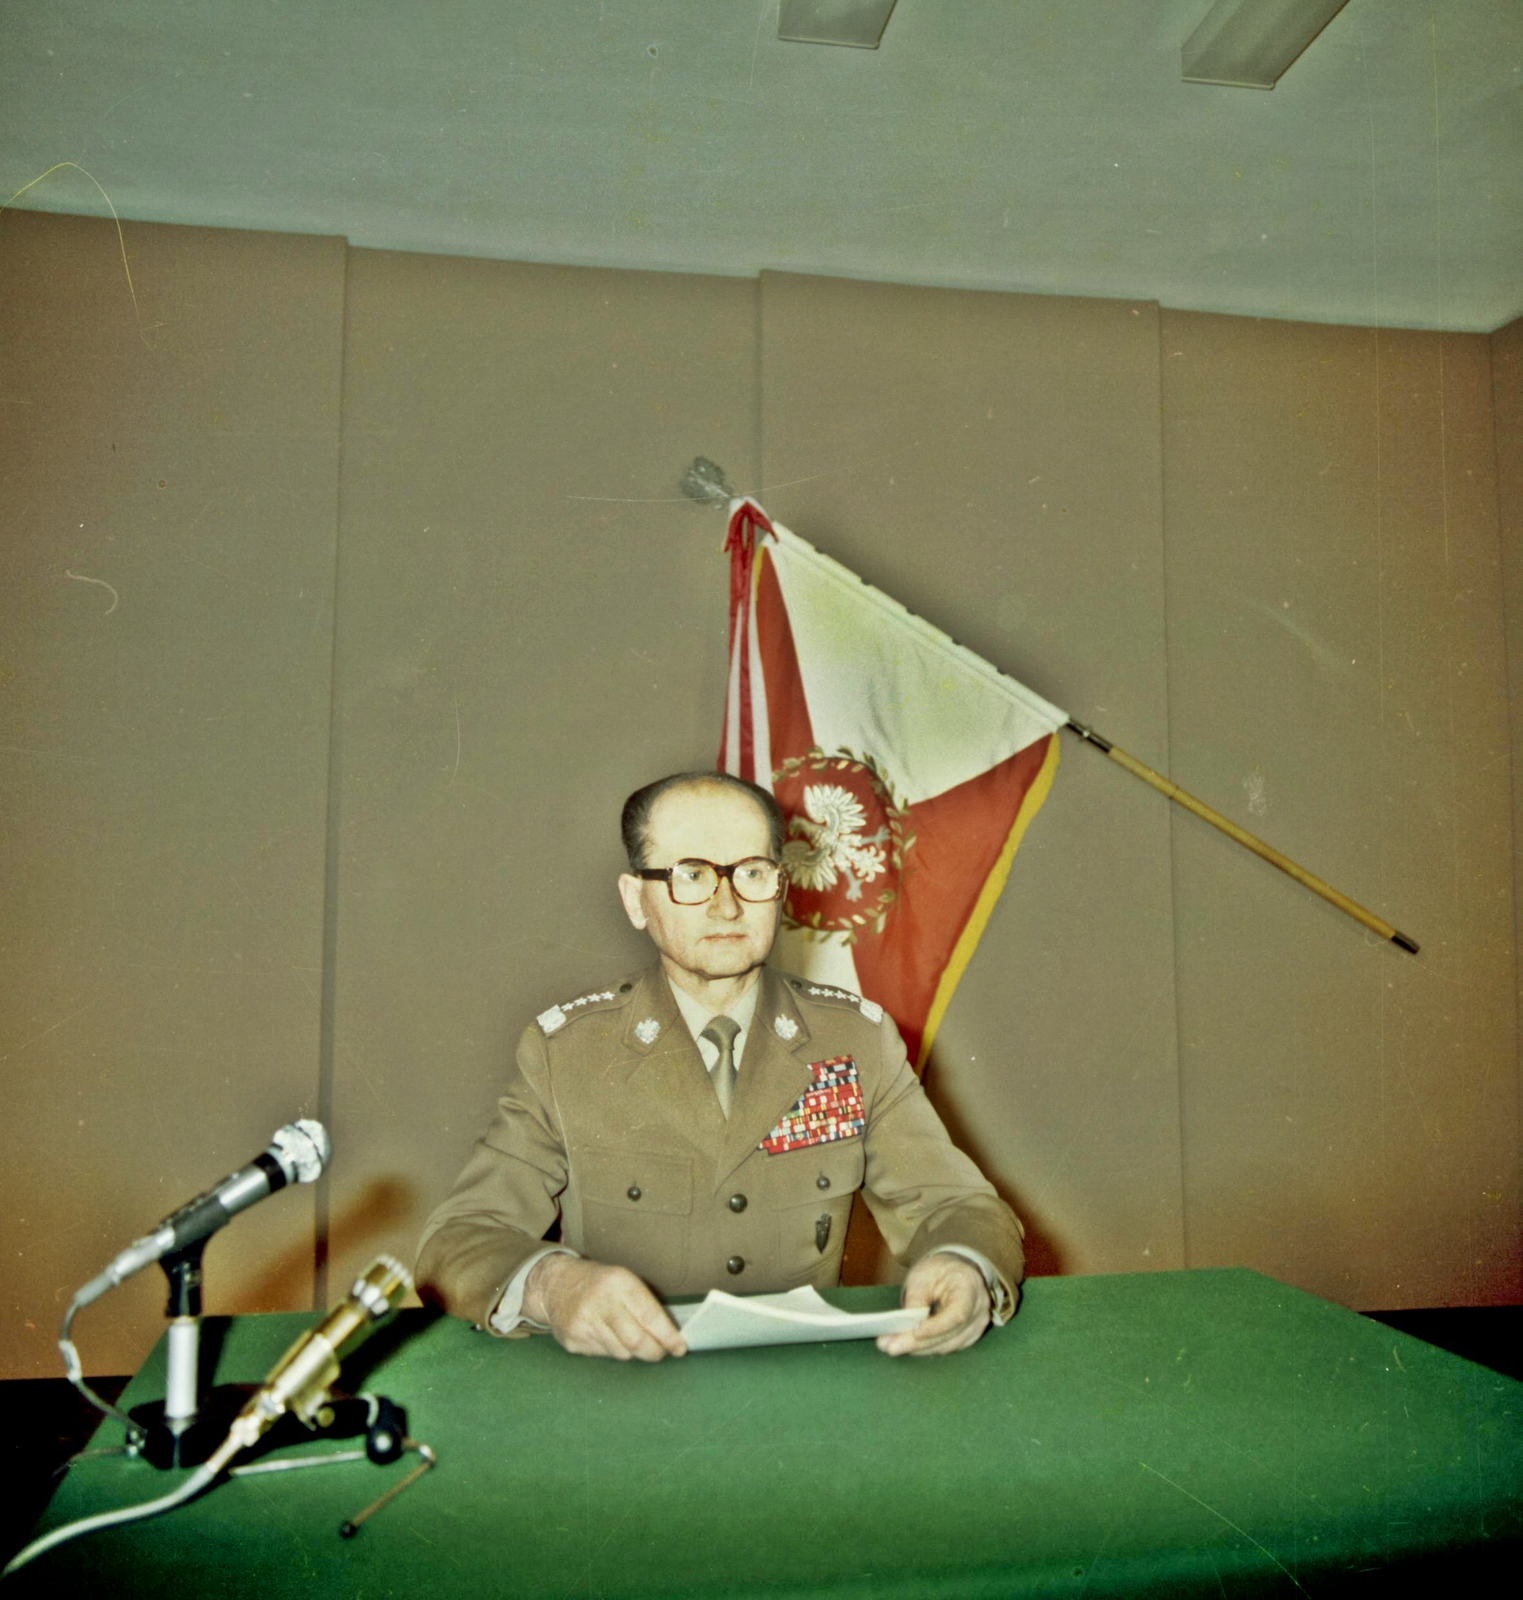 Zdjęcie przedstawia dojrzałego mężczyznę w mundurze generalskim. Mężczyzna siedzi, trzyma kartkę, ma założone okulary, jest łysiejący. Na stole z zielonym obrusem stoją mikrofony. Za mężczyzną wisi biało-czerwony sztandar z białym orłem.